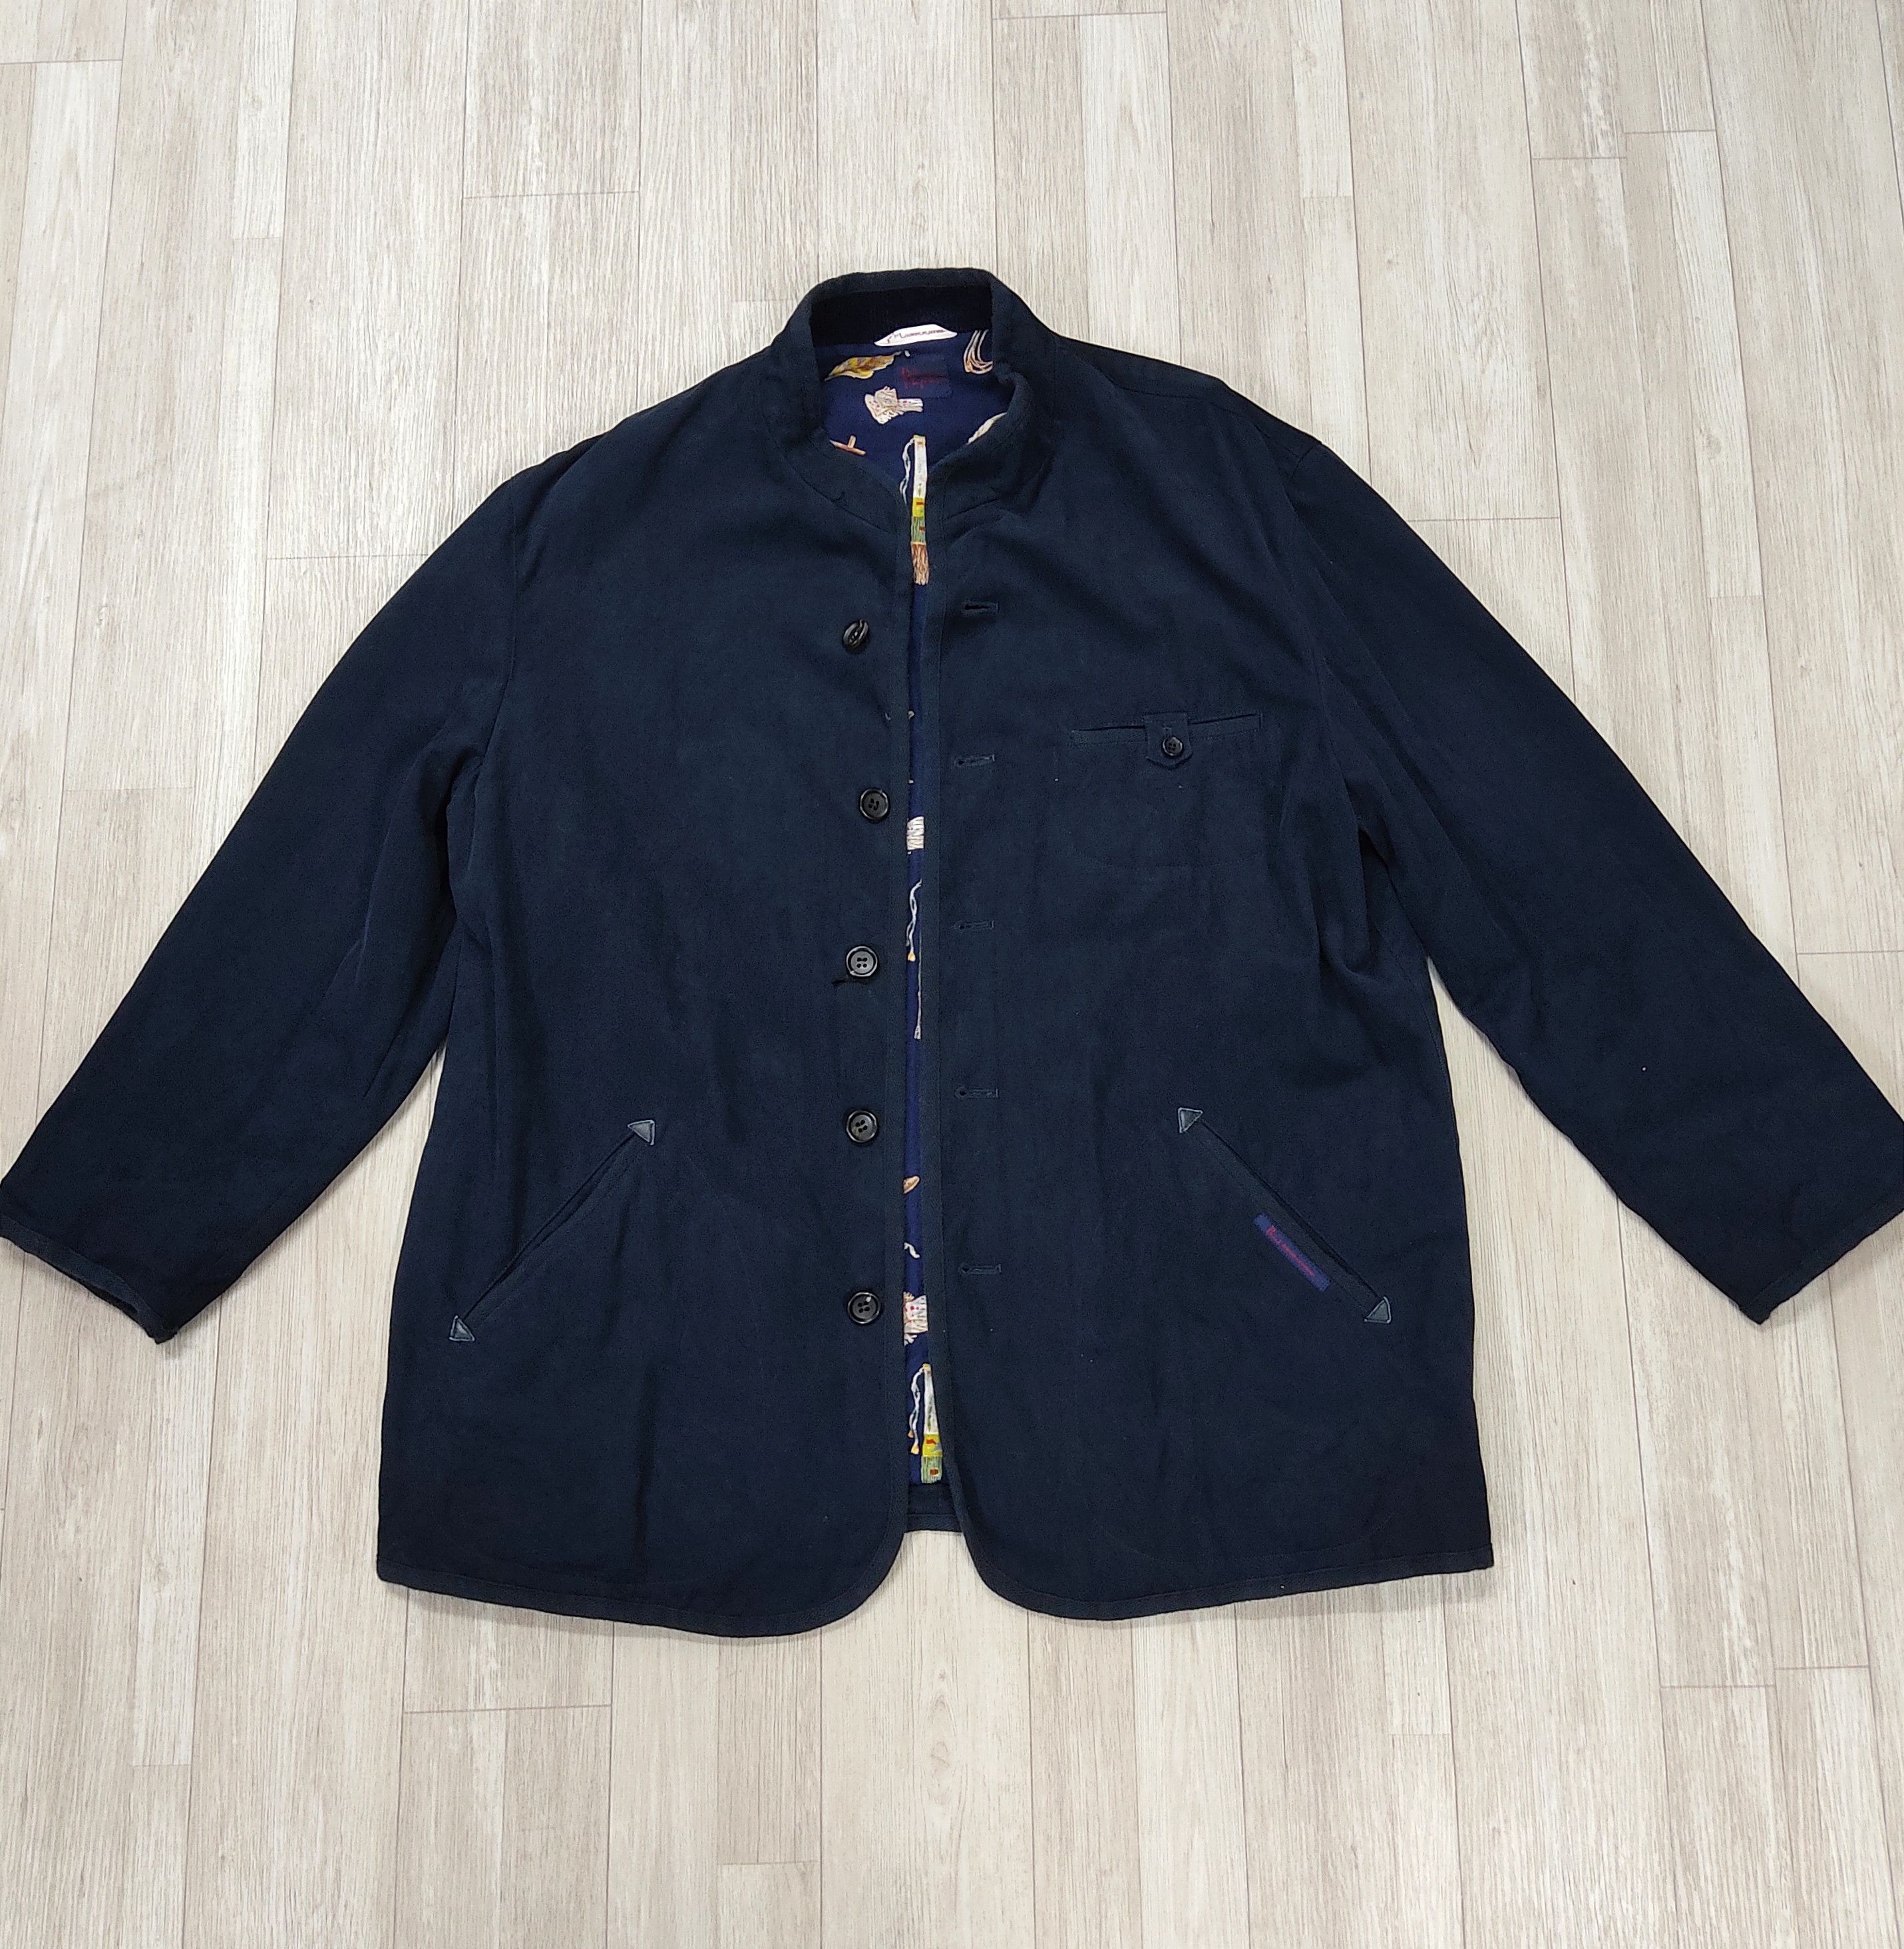 Archival Clothing - The PAPAS Mantere De Heming Navy Blue Deck Jacket - 3